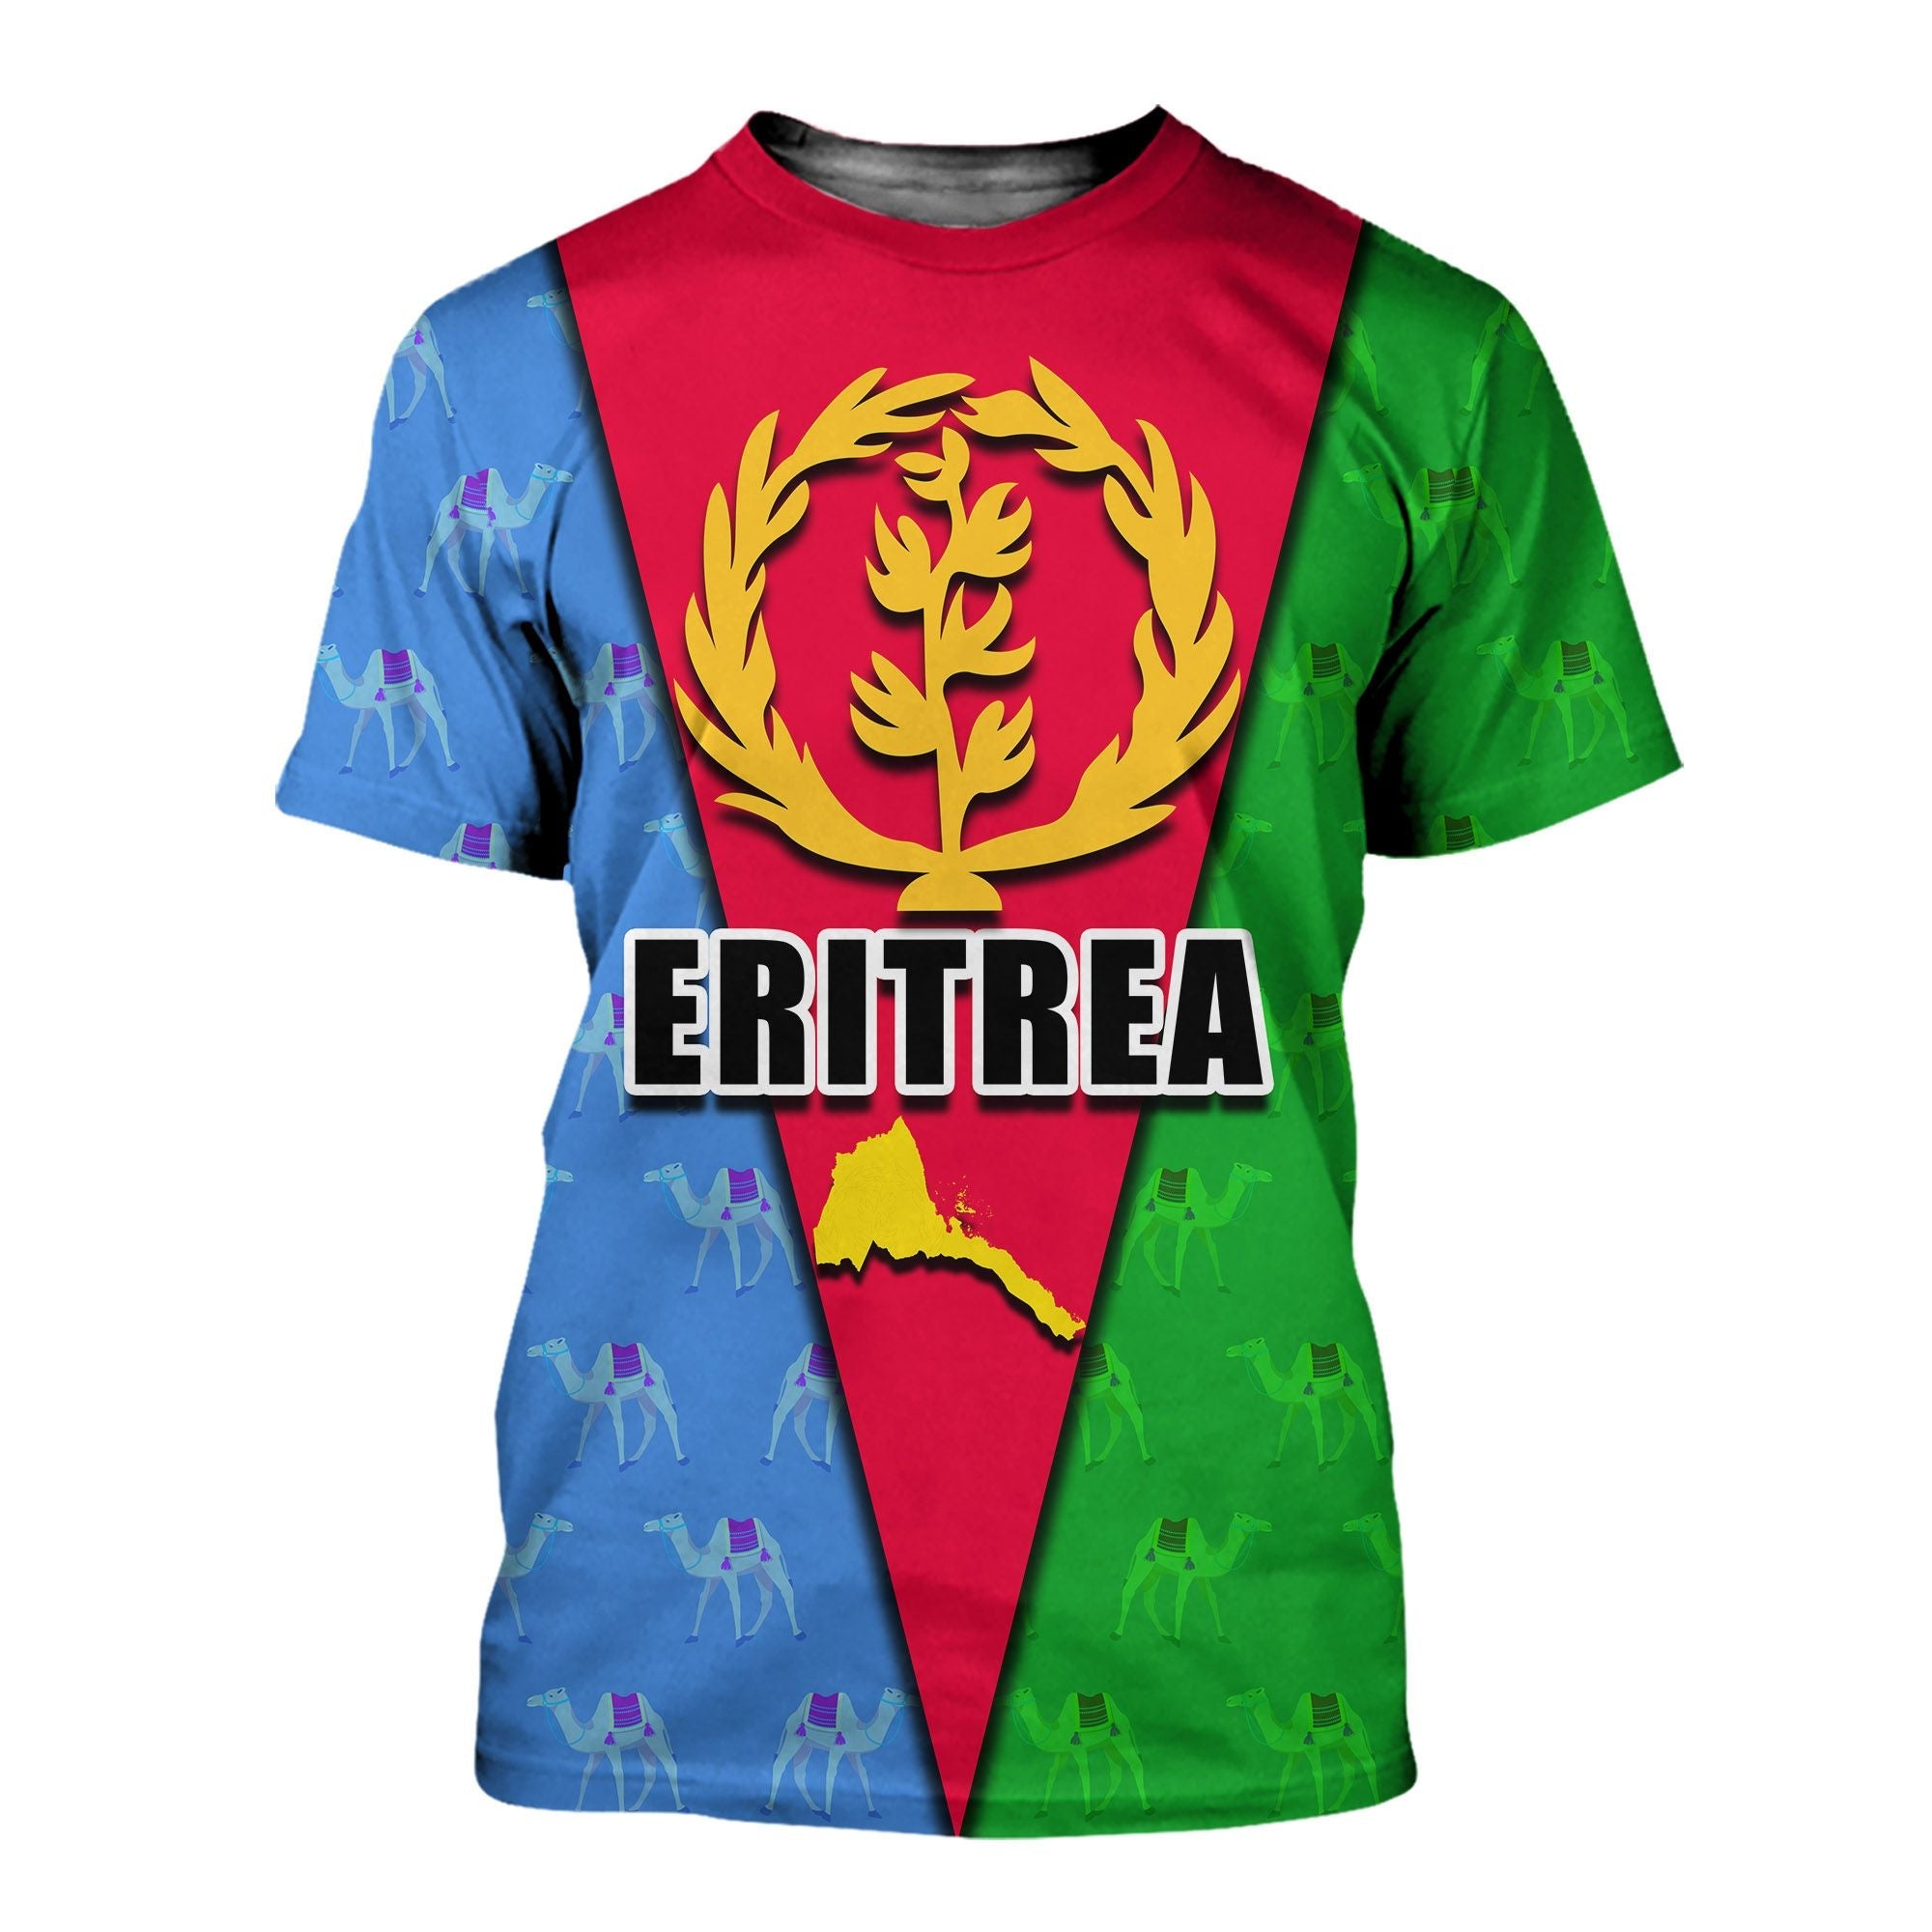 eritrea-flag-t-shirt-ver1